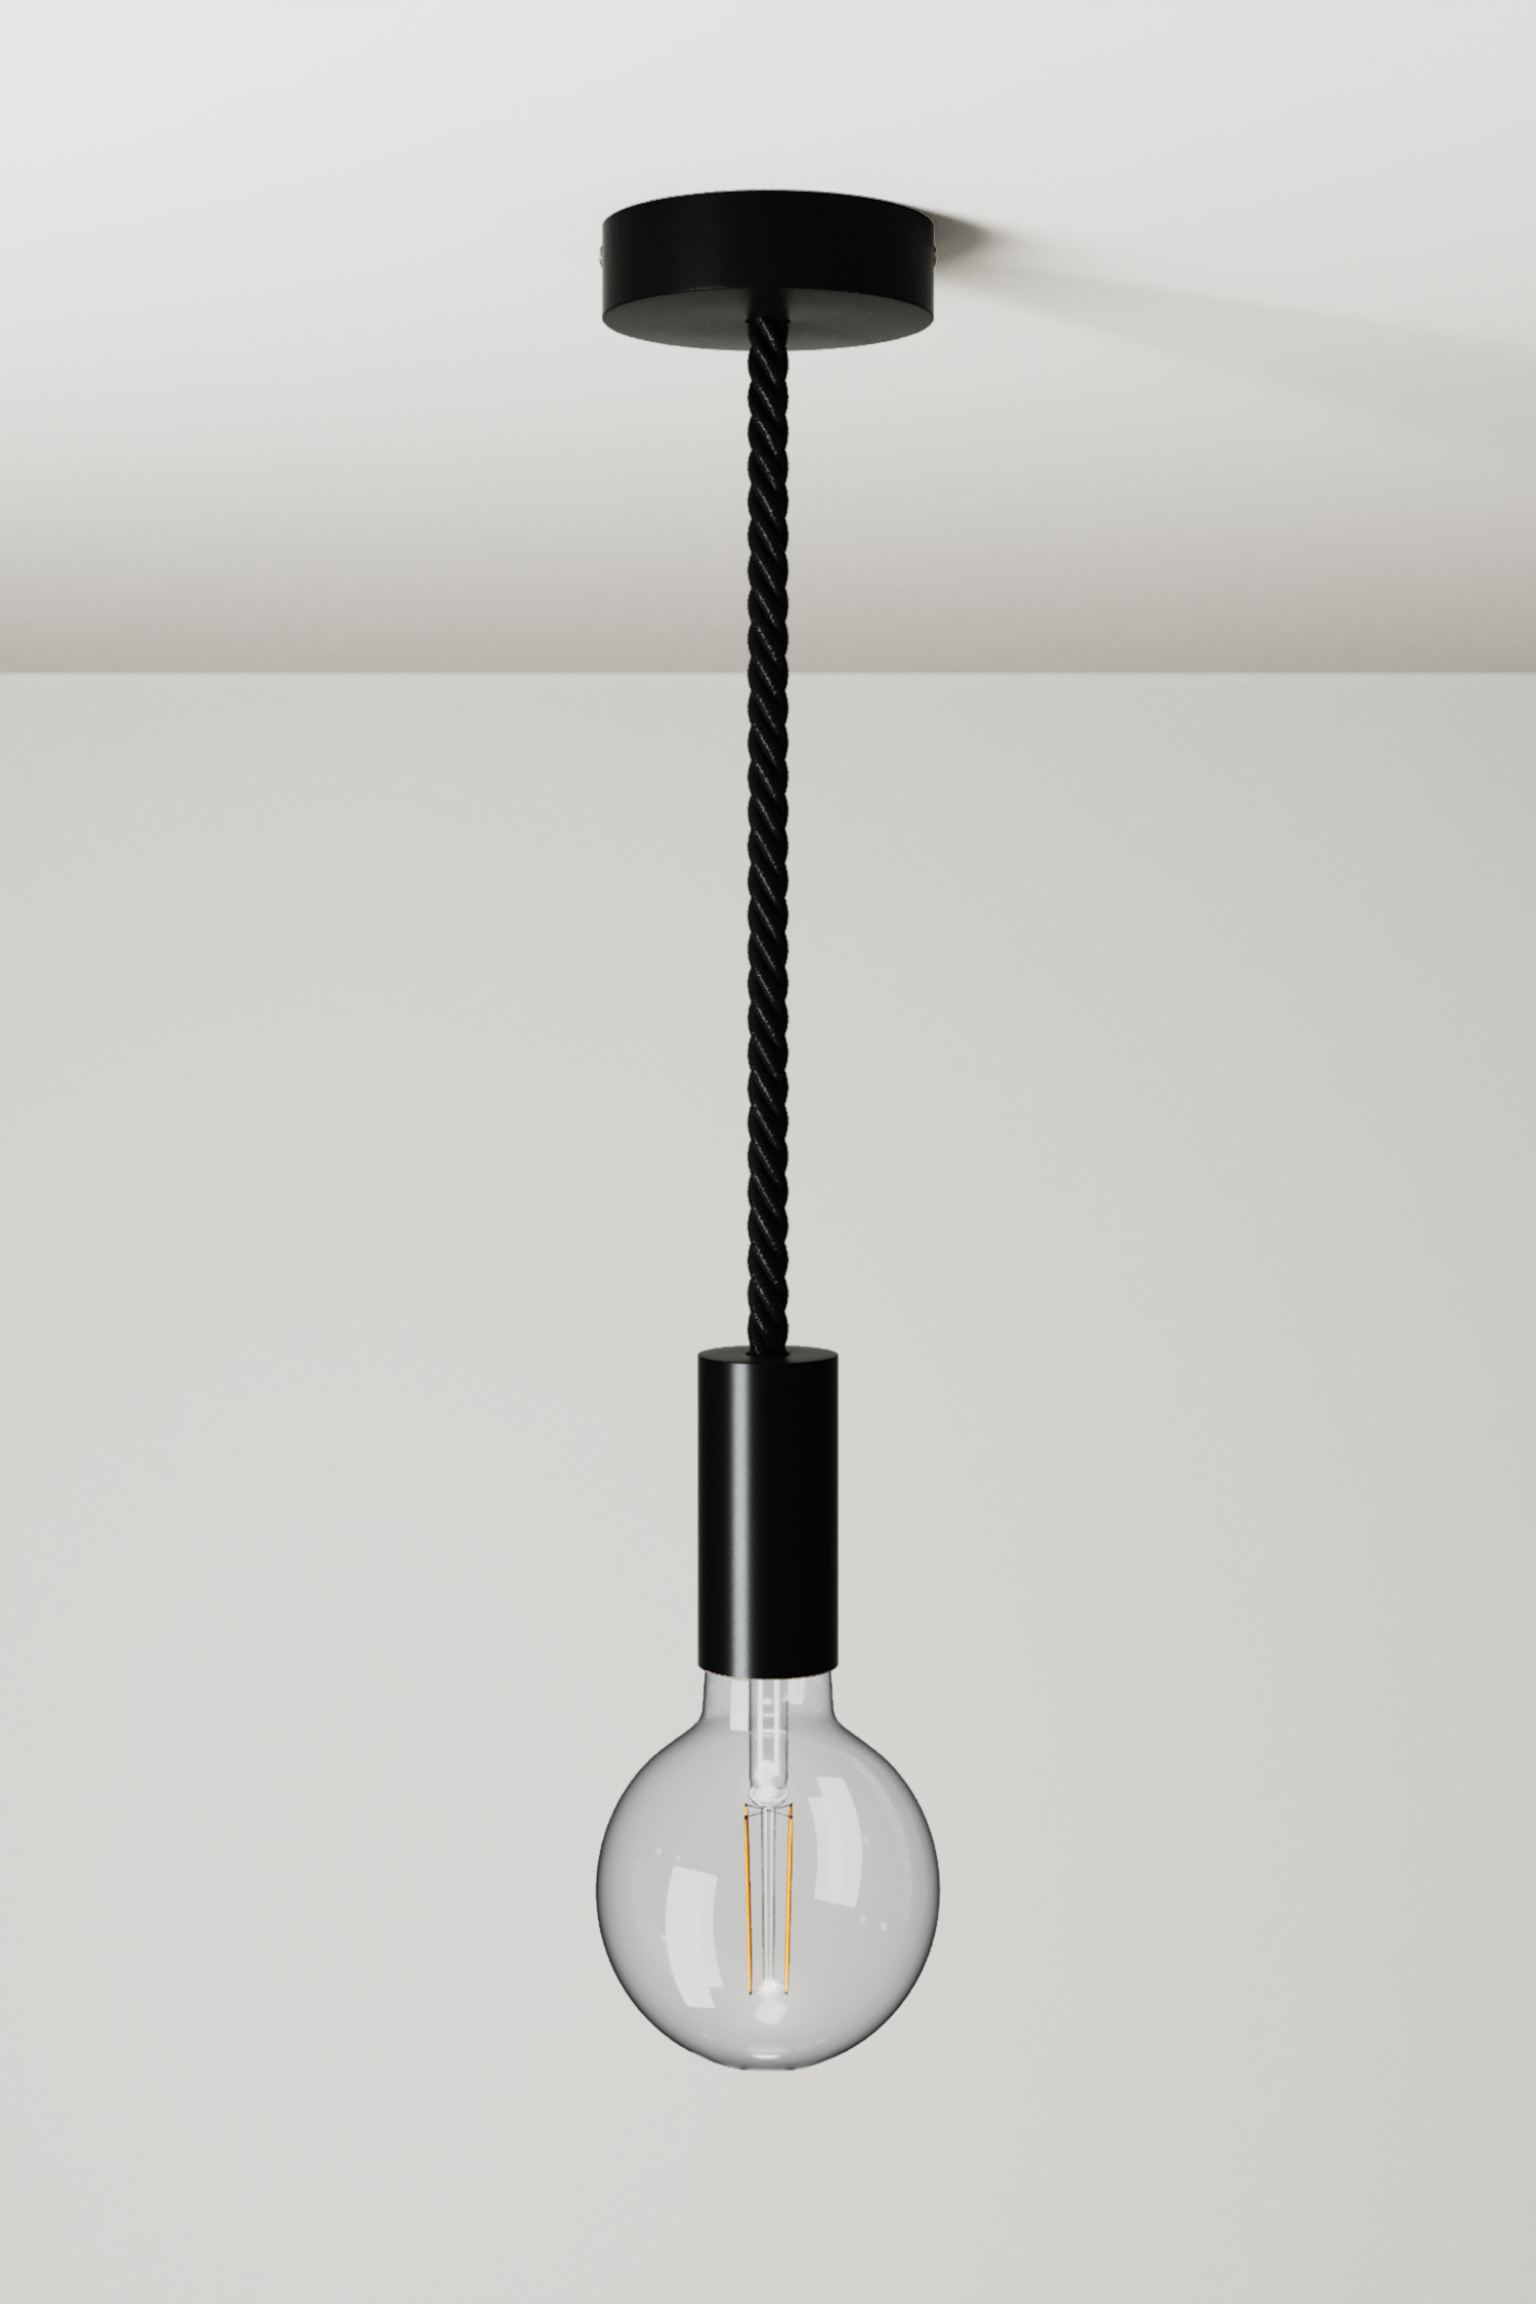 Потолочный светильник Creative Cables Wooden Ceiling, черный патрон е27 потолочный корпус гладкий основание прямое белый